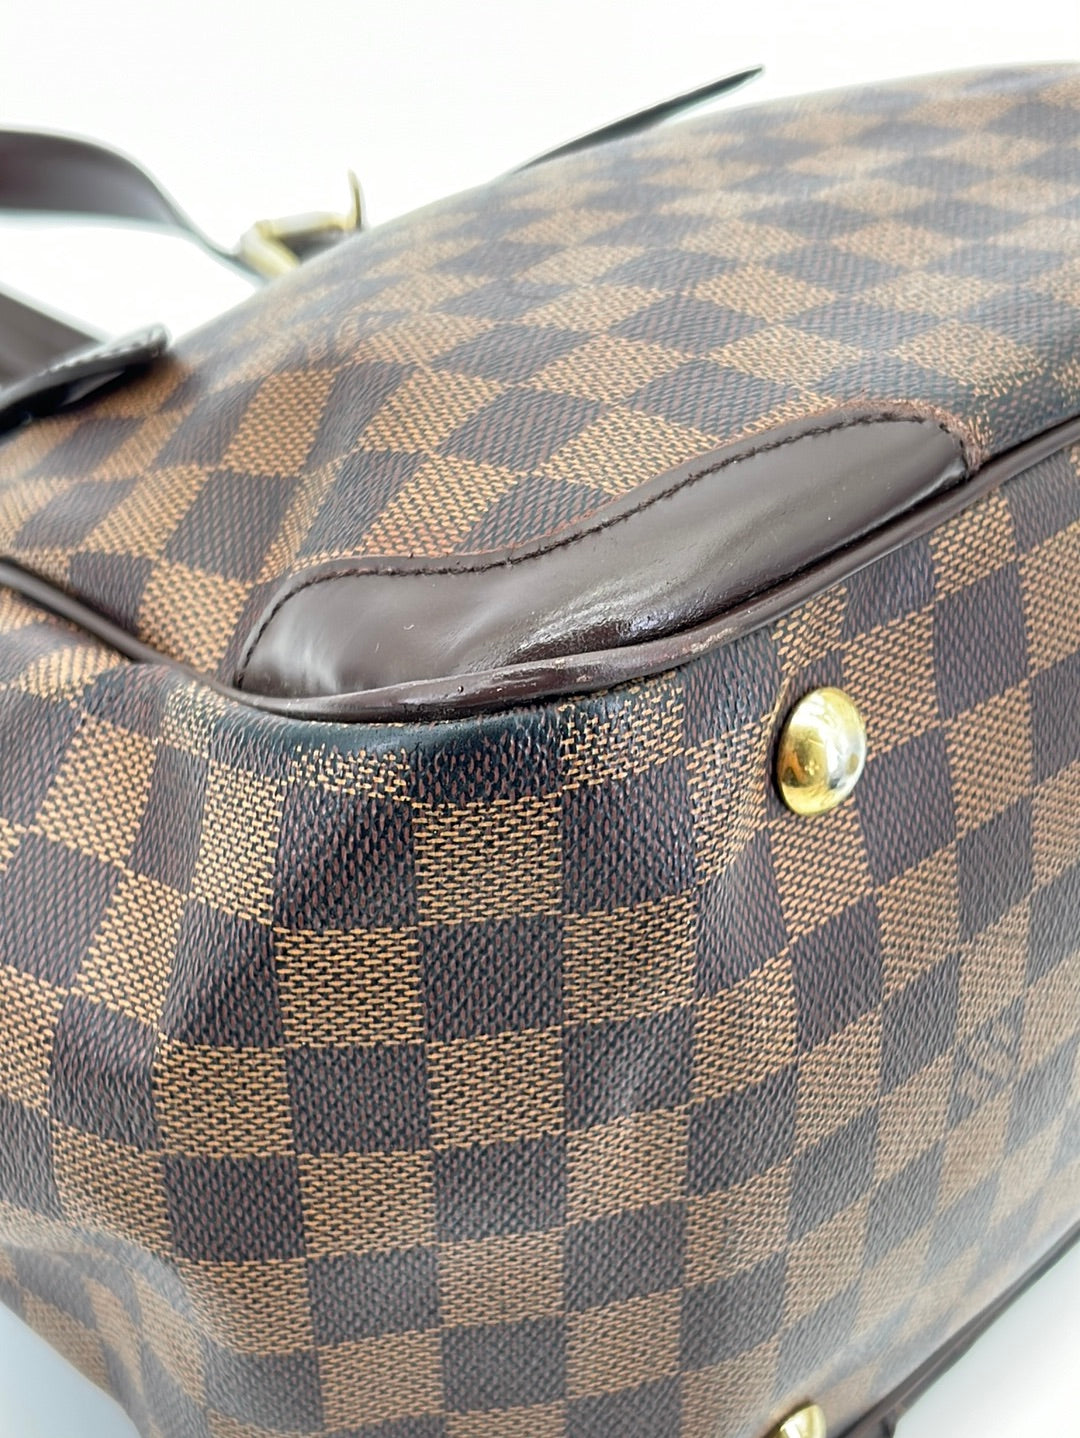 Louis Vuitton Verona Handbag 325733